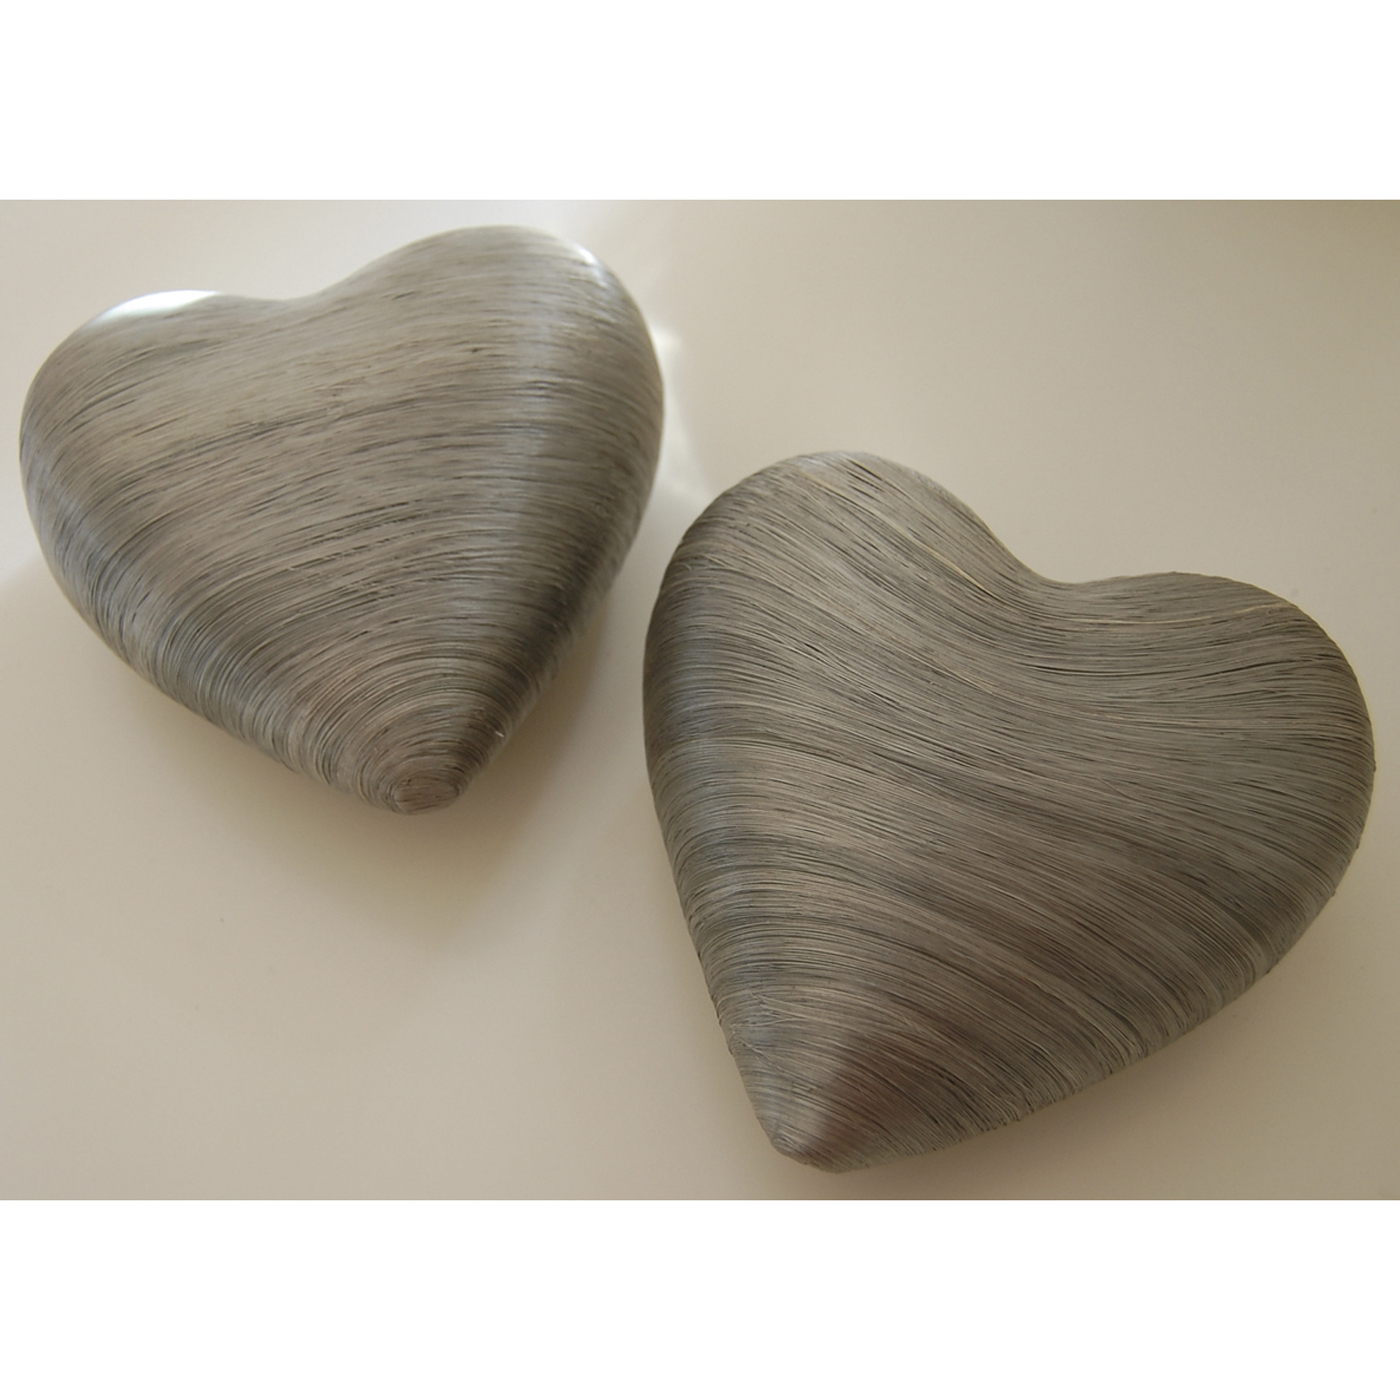 Decoration Hearts, Silver Grey, 160 mm - 3 pieces